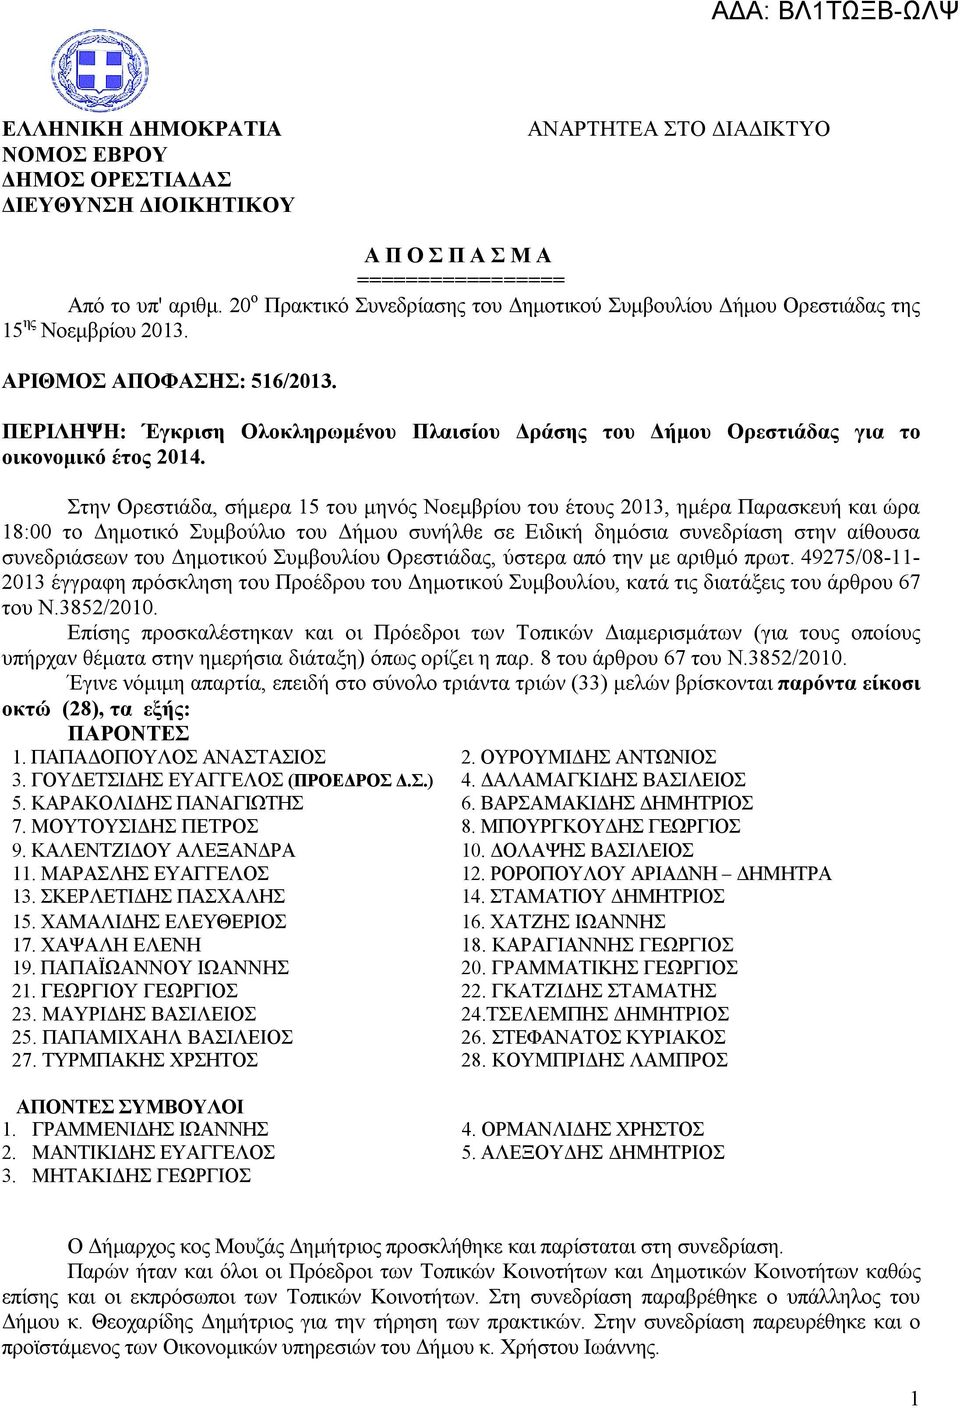 ΠΕΡIΛΗΨΗ: Έγκριση Ολοκληρωμένου Πλαισίου Δράσης του Δήμου Ορεστιάδας για το οικονομικό έτος 2014.